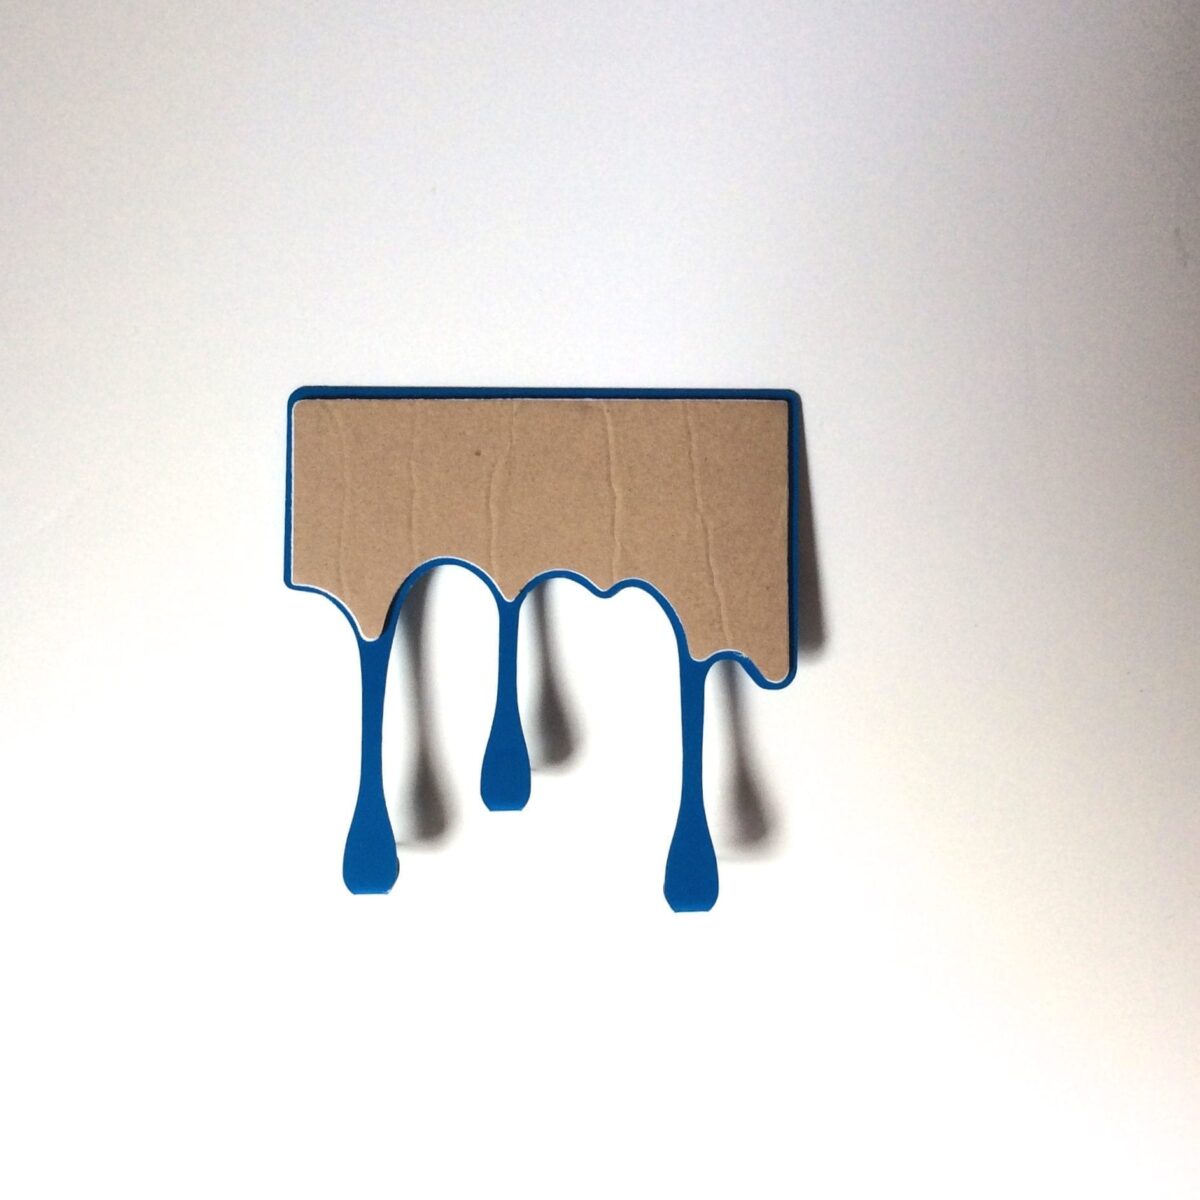 Patere autocollante coulee de peinture bleue 2 dans le site N°1 de patère et porte-manteaux de france